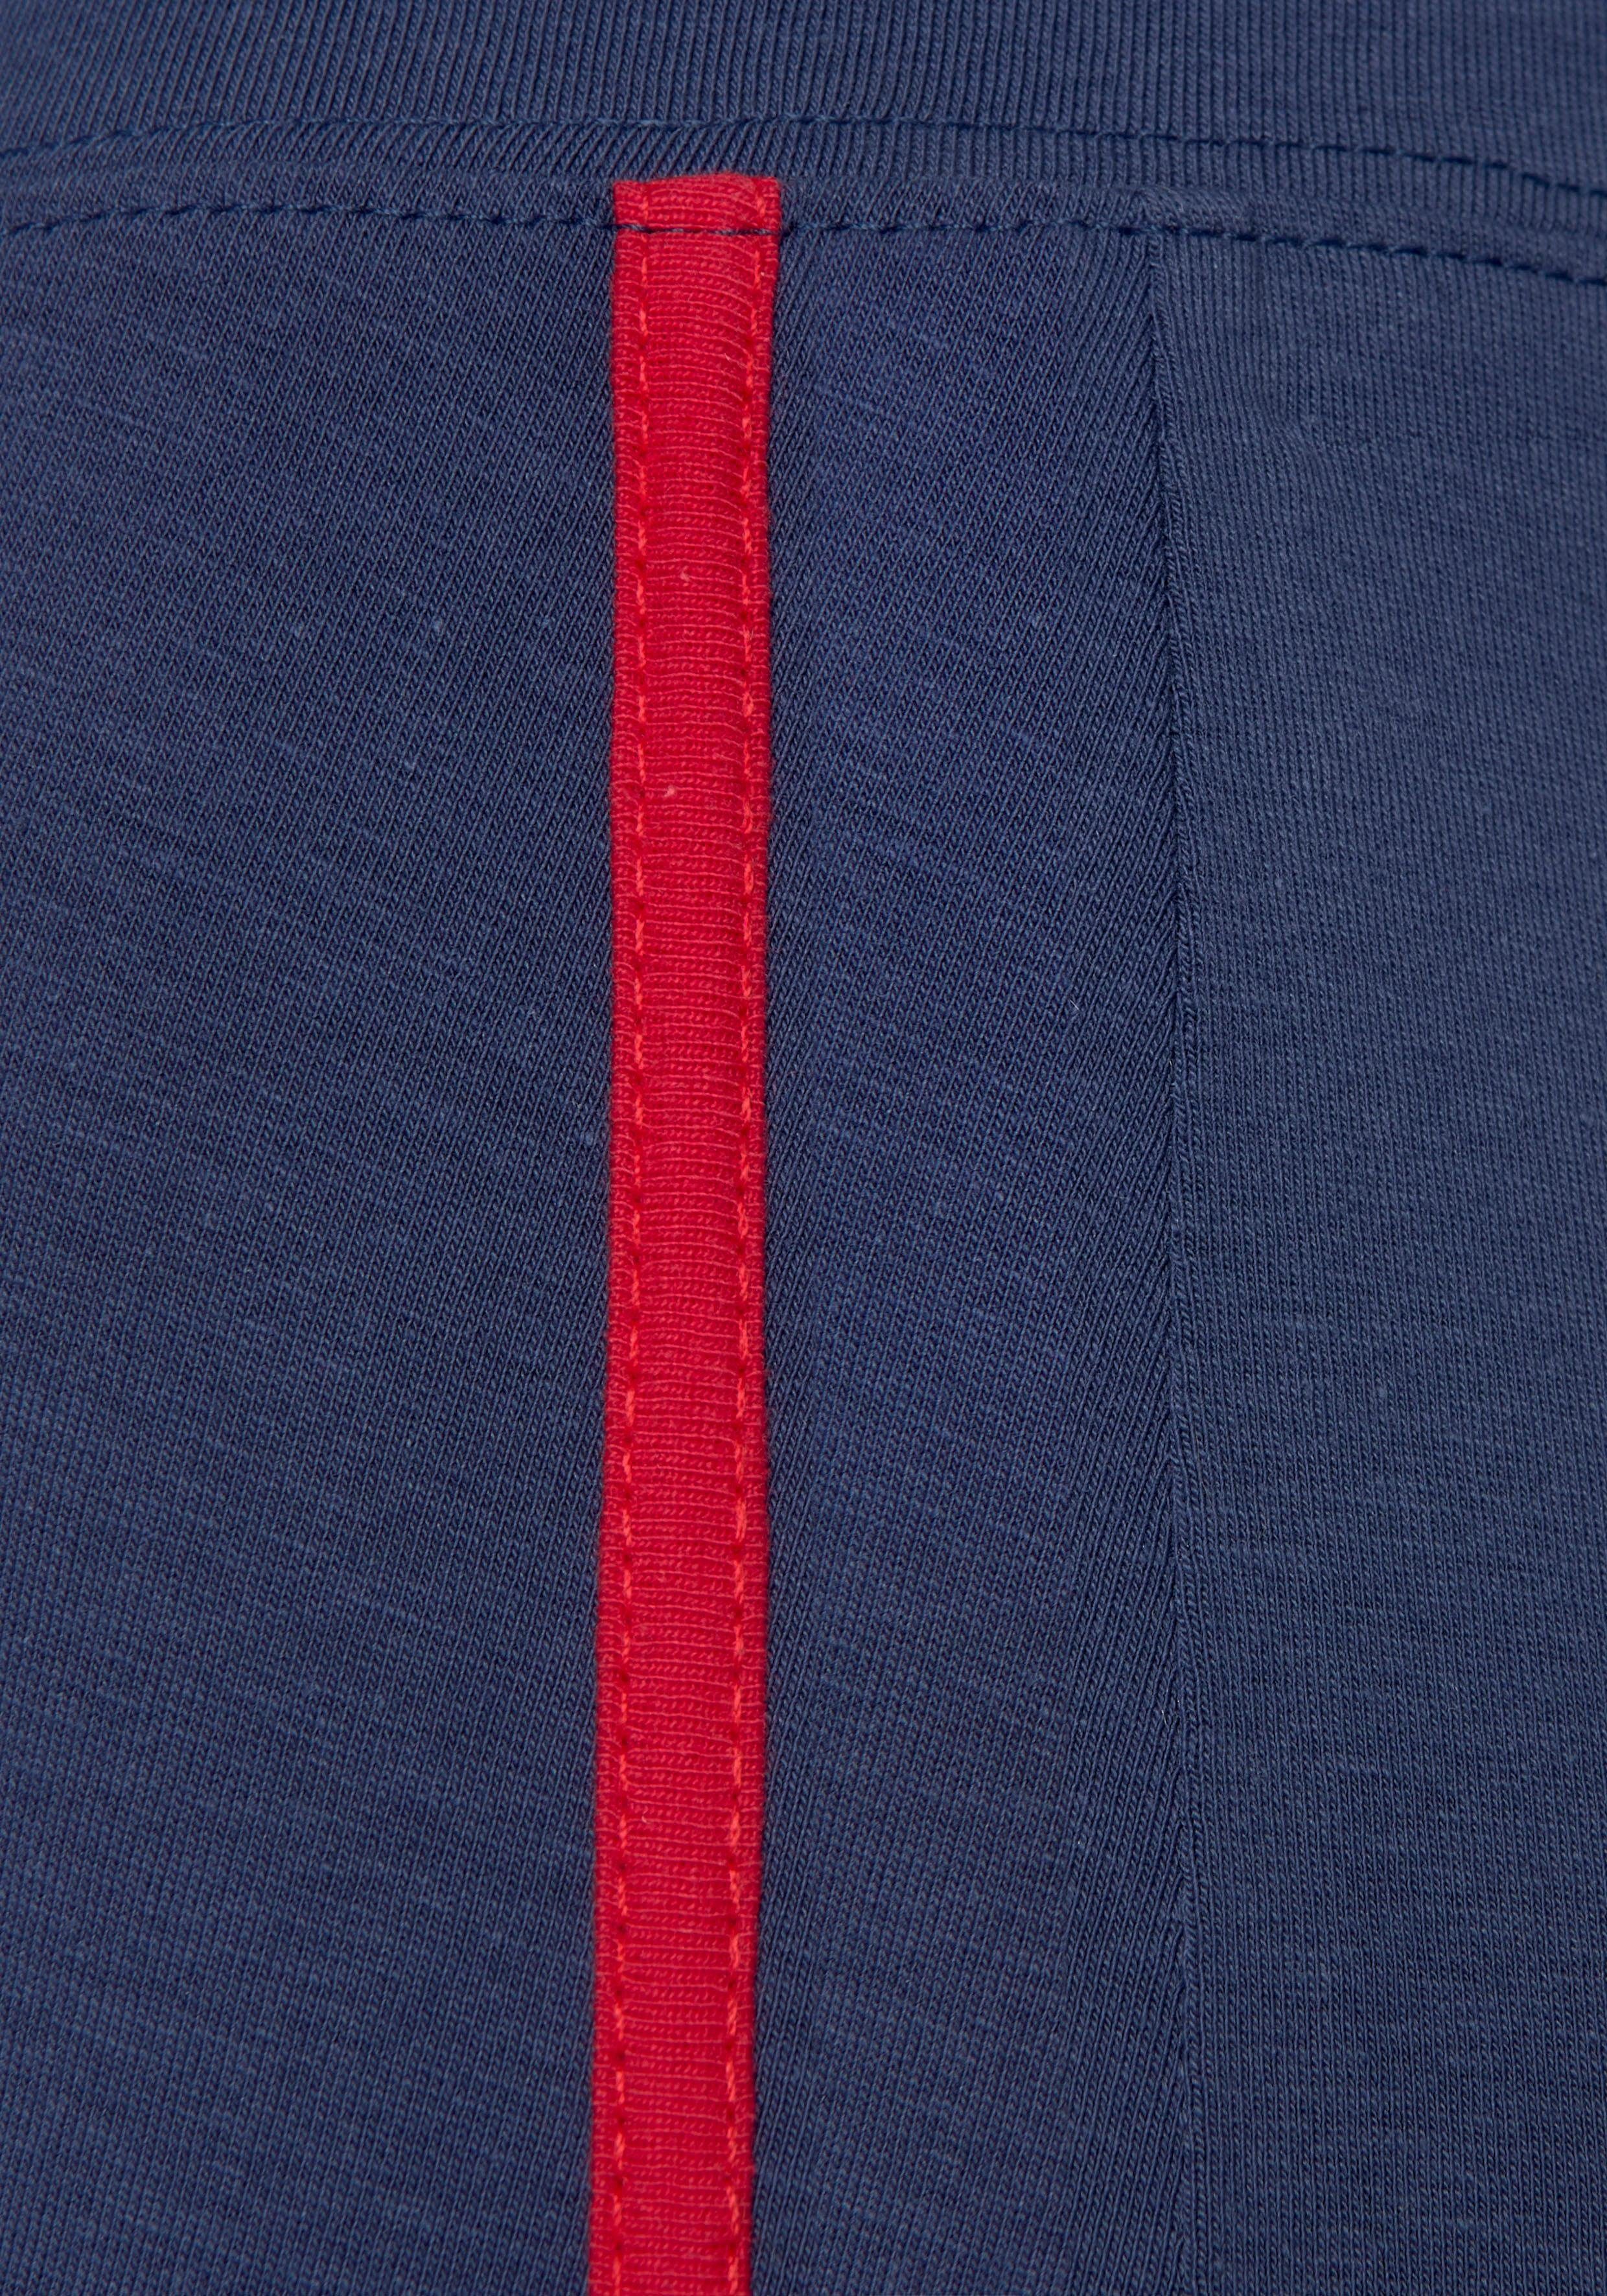 in Seitliche Leggings H.I.S marine-navy-rot Streifeneinsätze Kontrastfarben